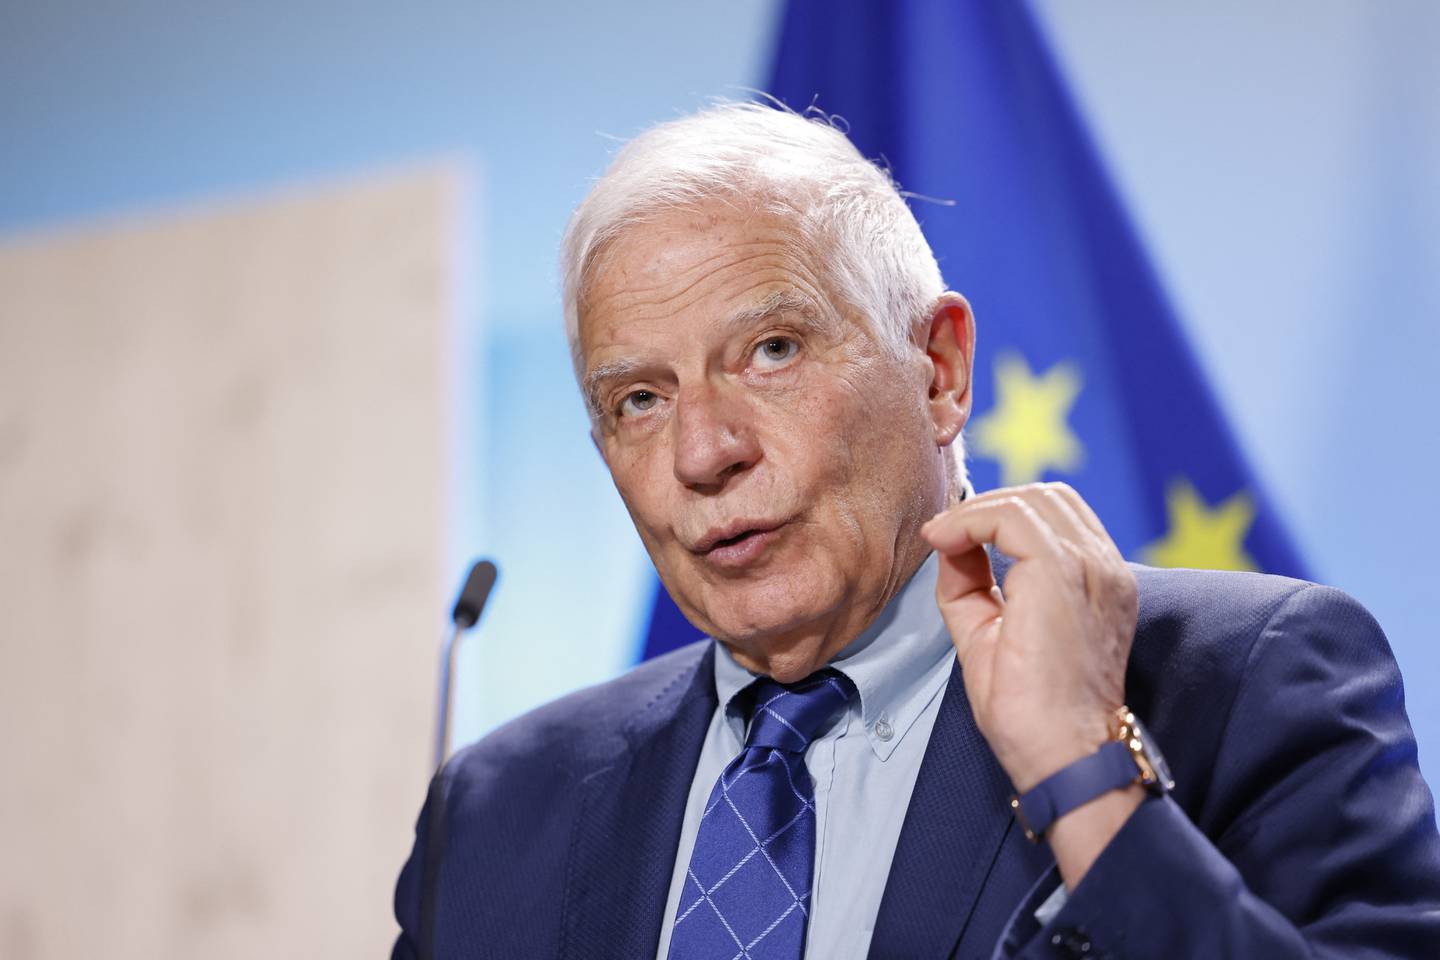 Josep Borrell, responsable de la Política Exterior de la Unión Europea dijo: "No voy a comentar cualquier cosa tonta que venga de la campaña presidencial de Estados Unidos".